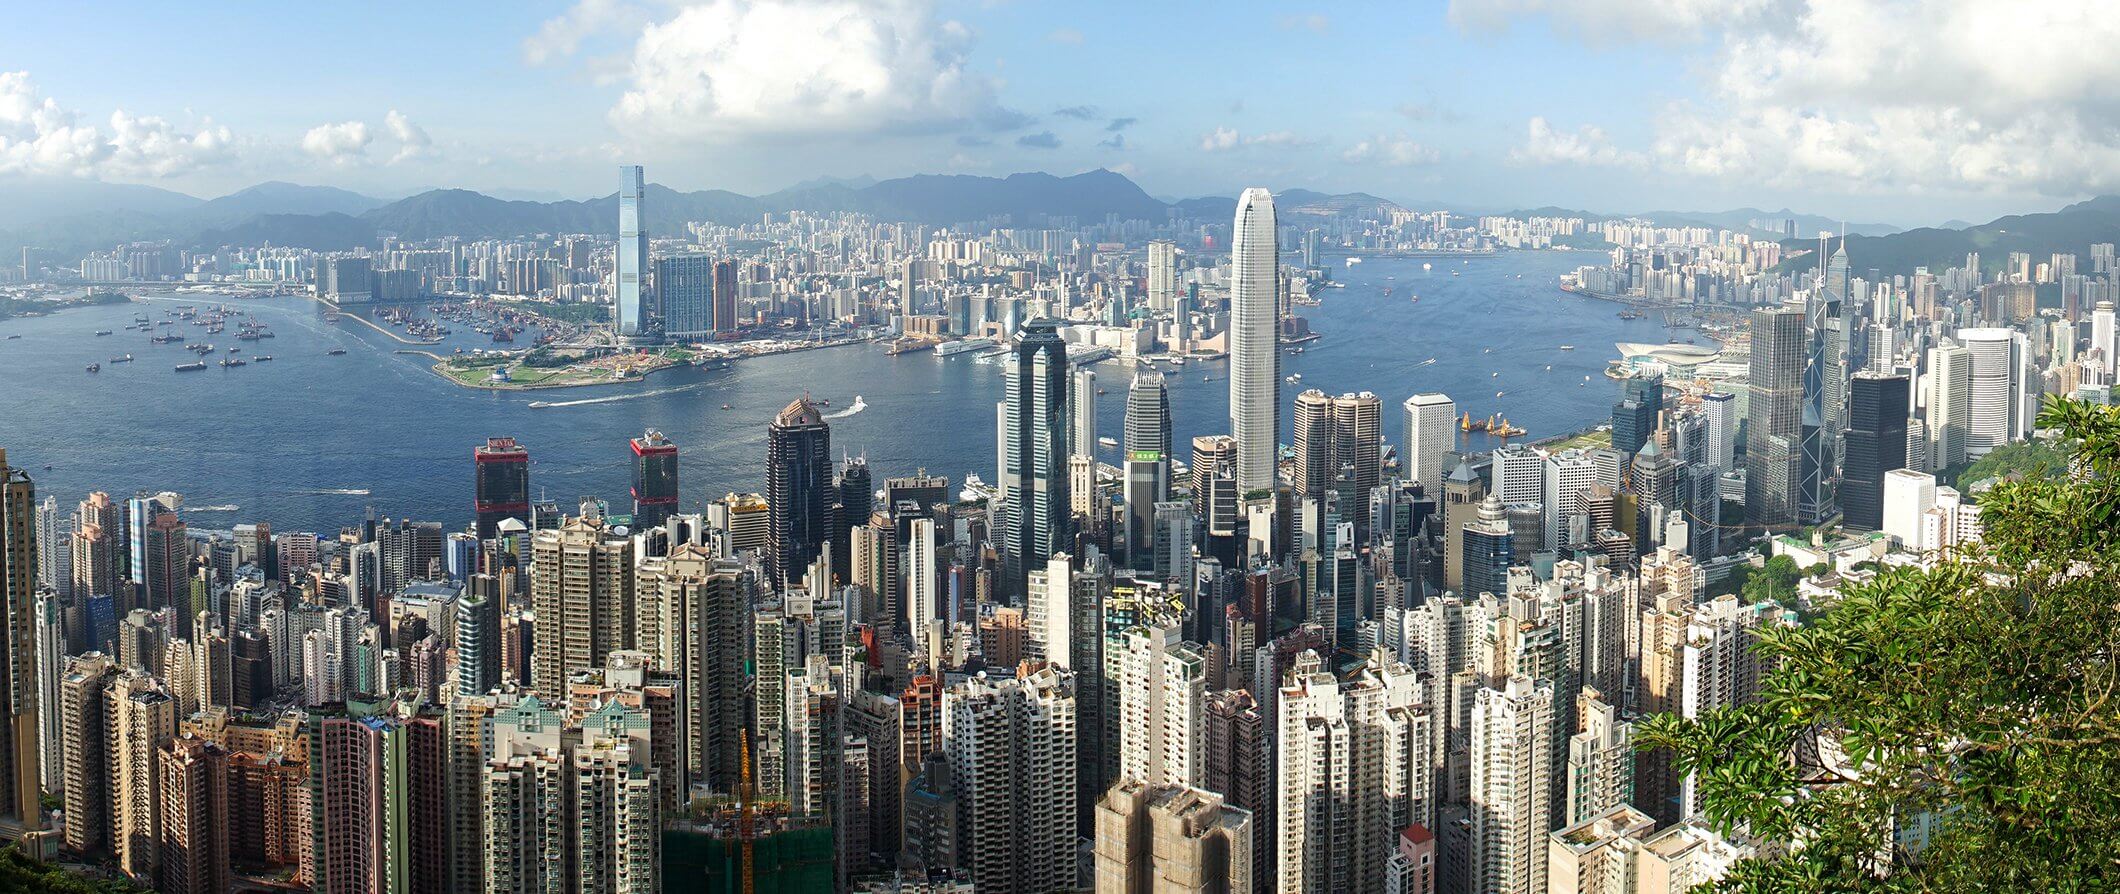 جاه طلبی هنگ کنگ برای رمزارزها از سوی پکن مورد توجه قرار گرفته است